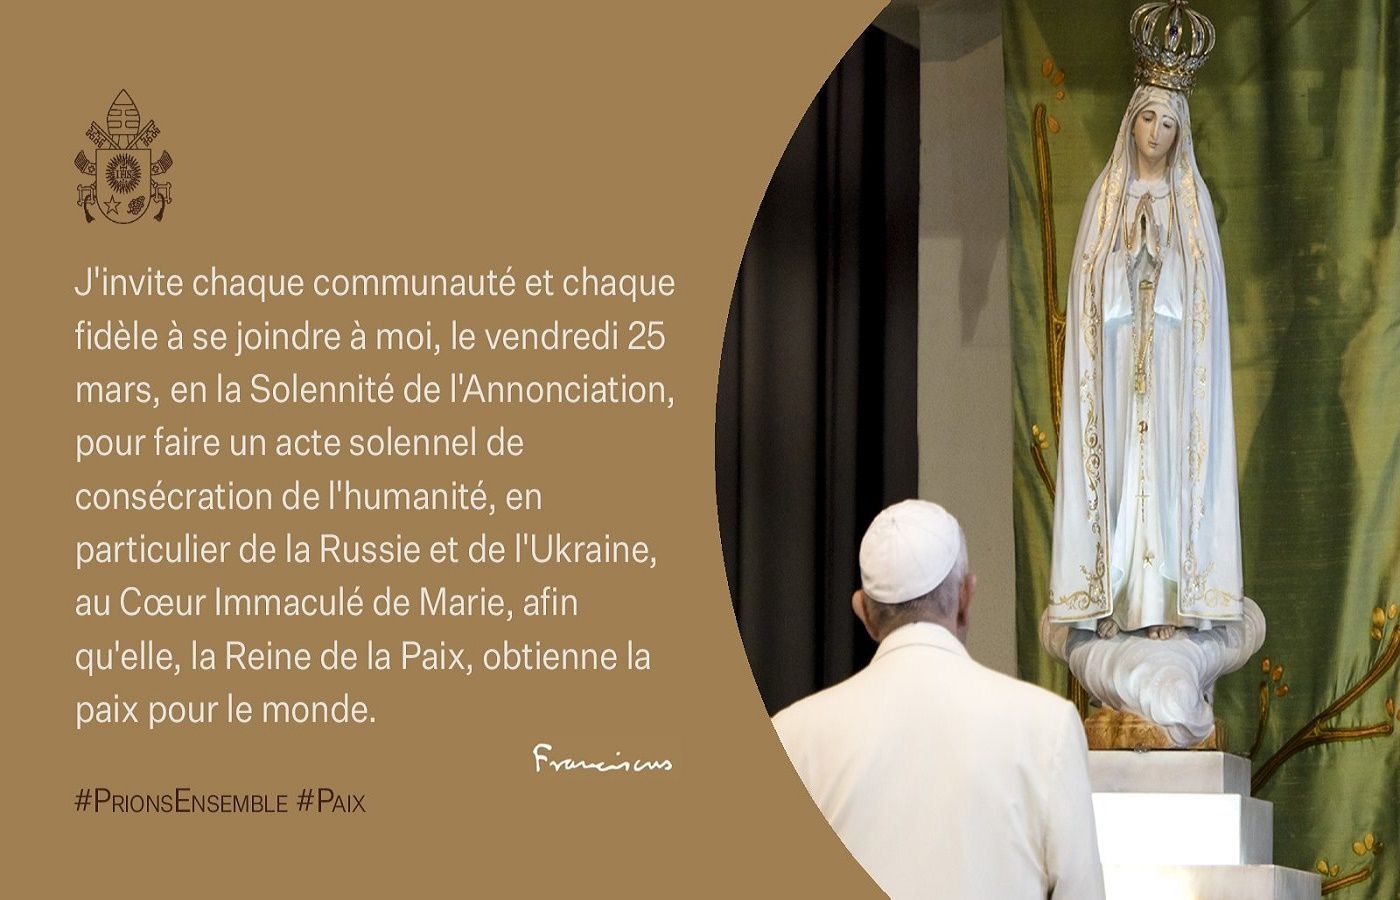 25 mars 2022, la consécration de la Russie et l’Ukraine au Cœur Immaculé de Marie